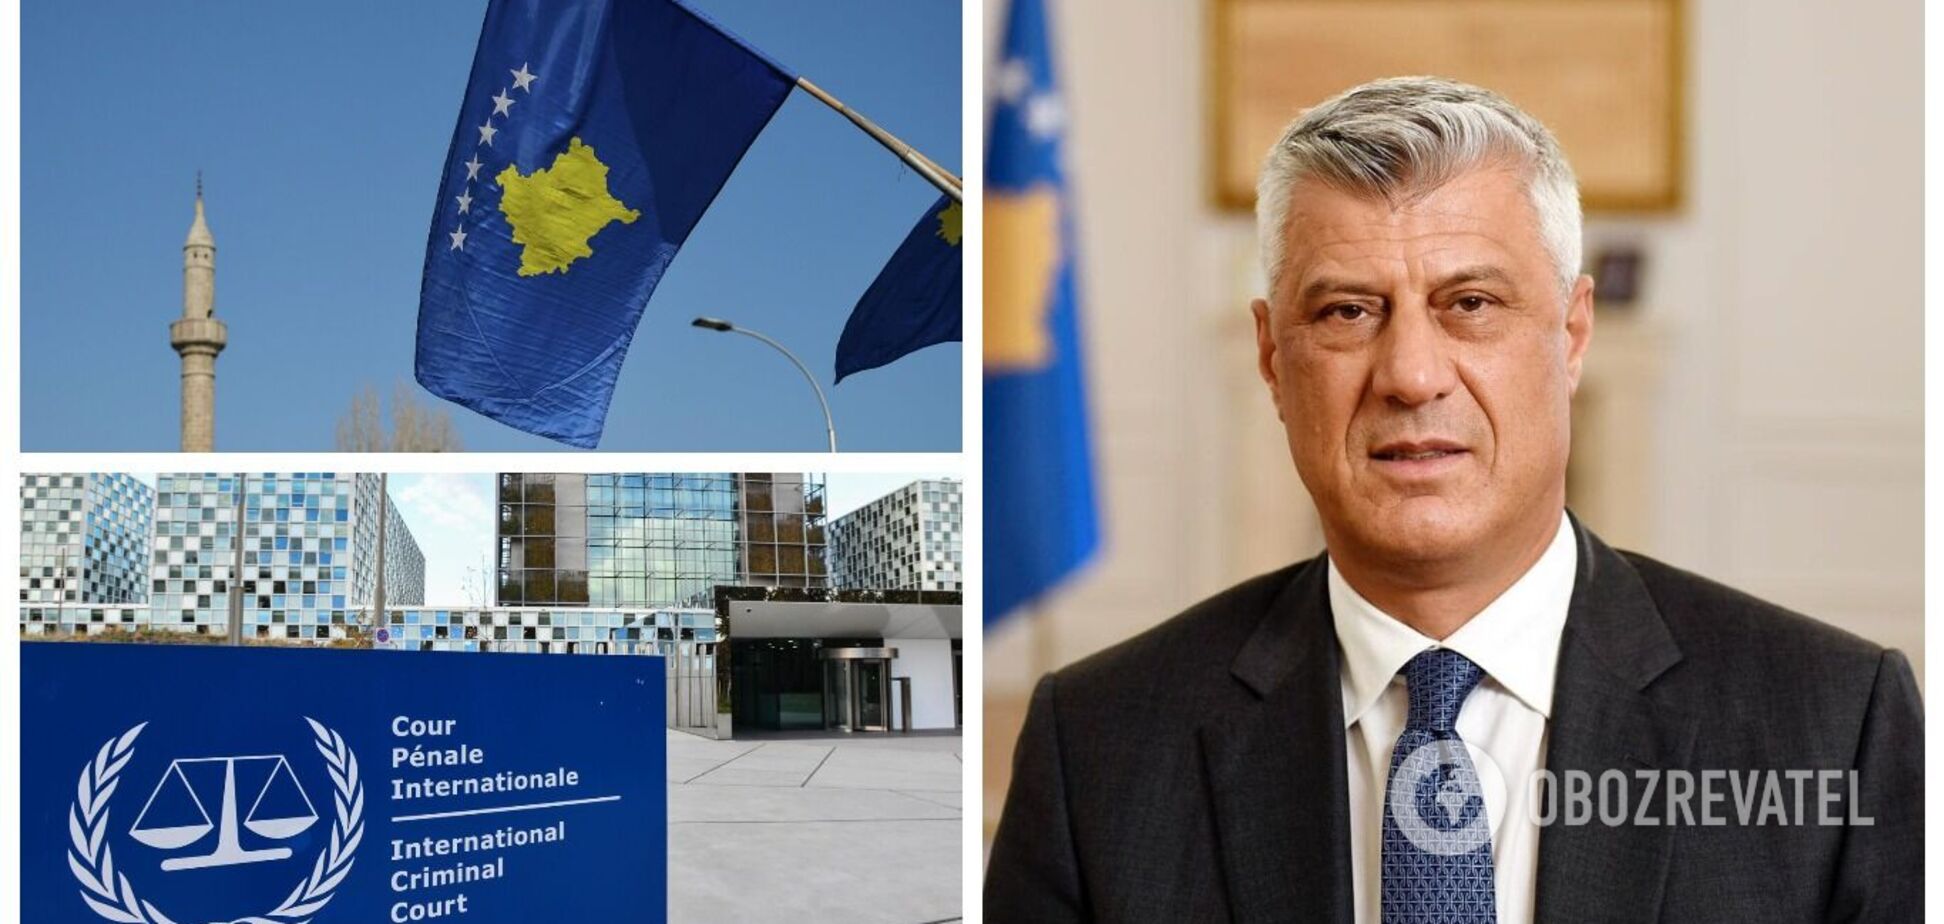 Обвинения по 10 пунктам: в Гааге начали судить экс-президента Косово, обвиняемого в военных преступлениях